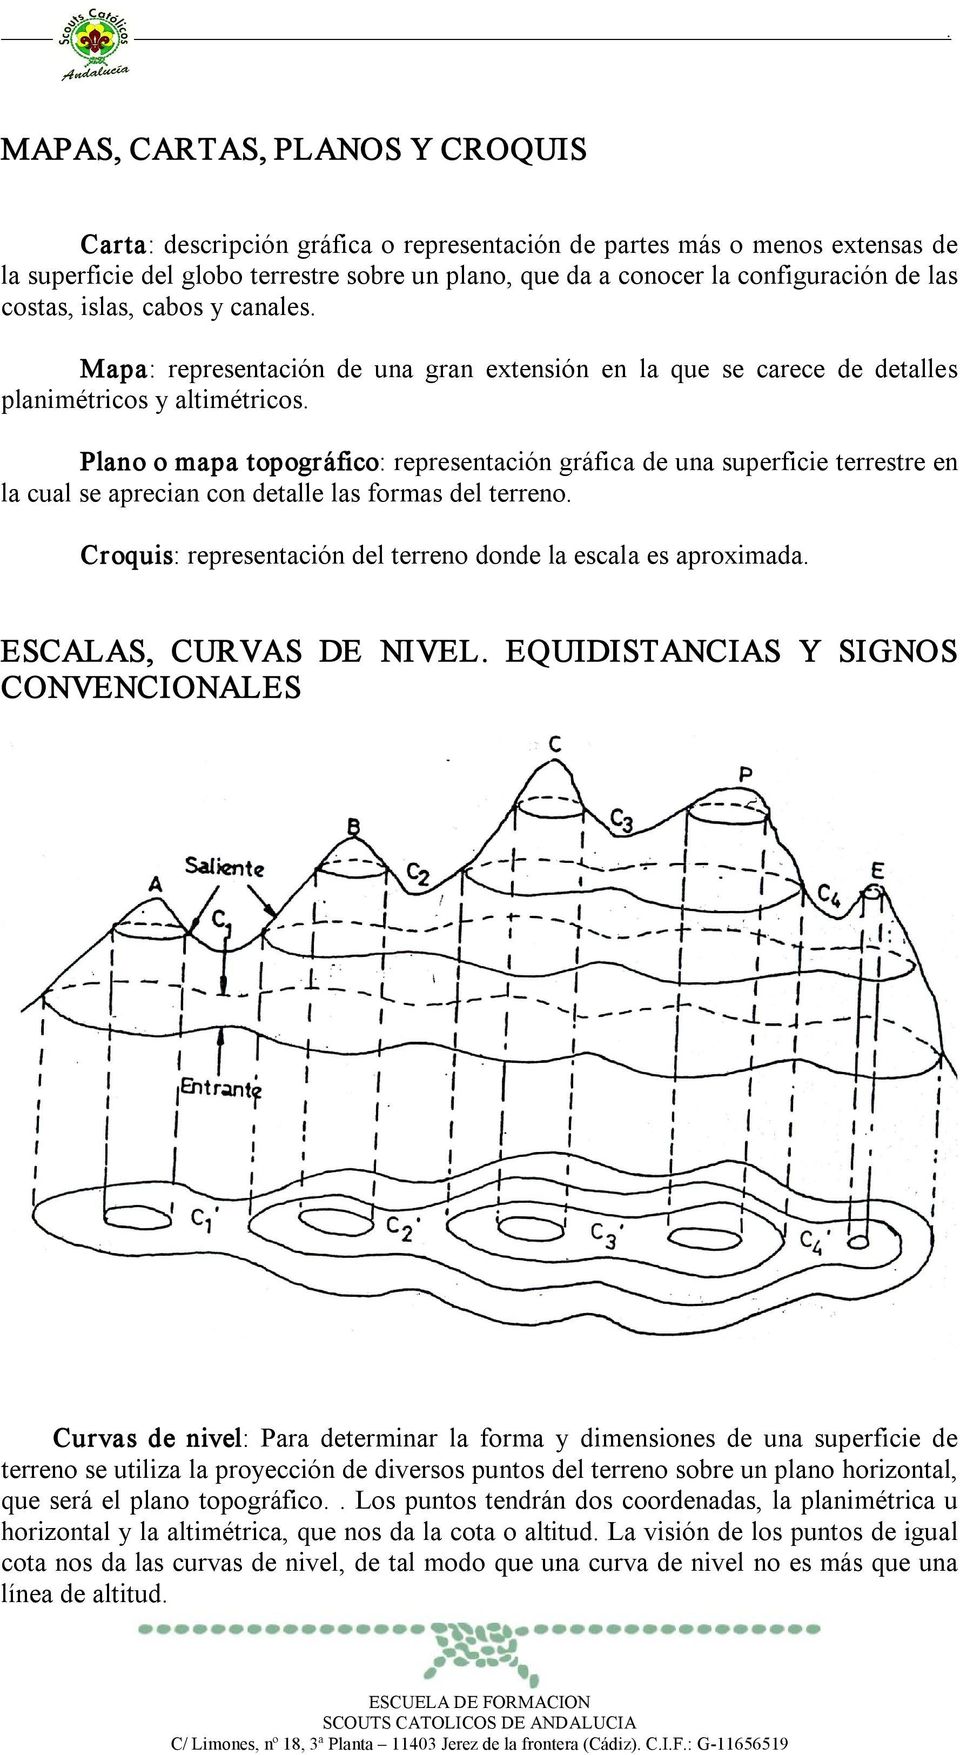 Plano o mapa topográfico: representación gráfica de una superficie terrestre en la cual se aprecian con detalle las formas del terreno.